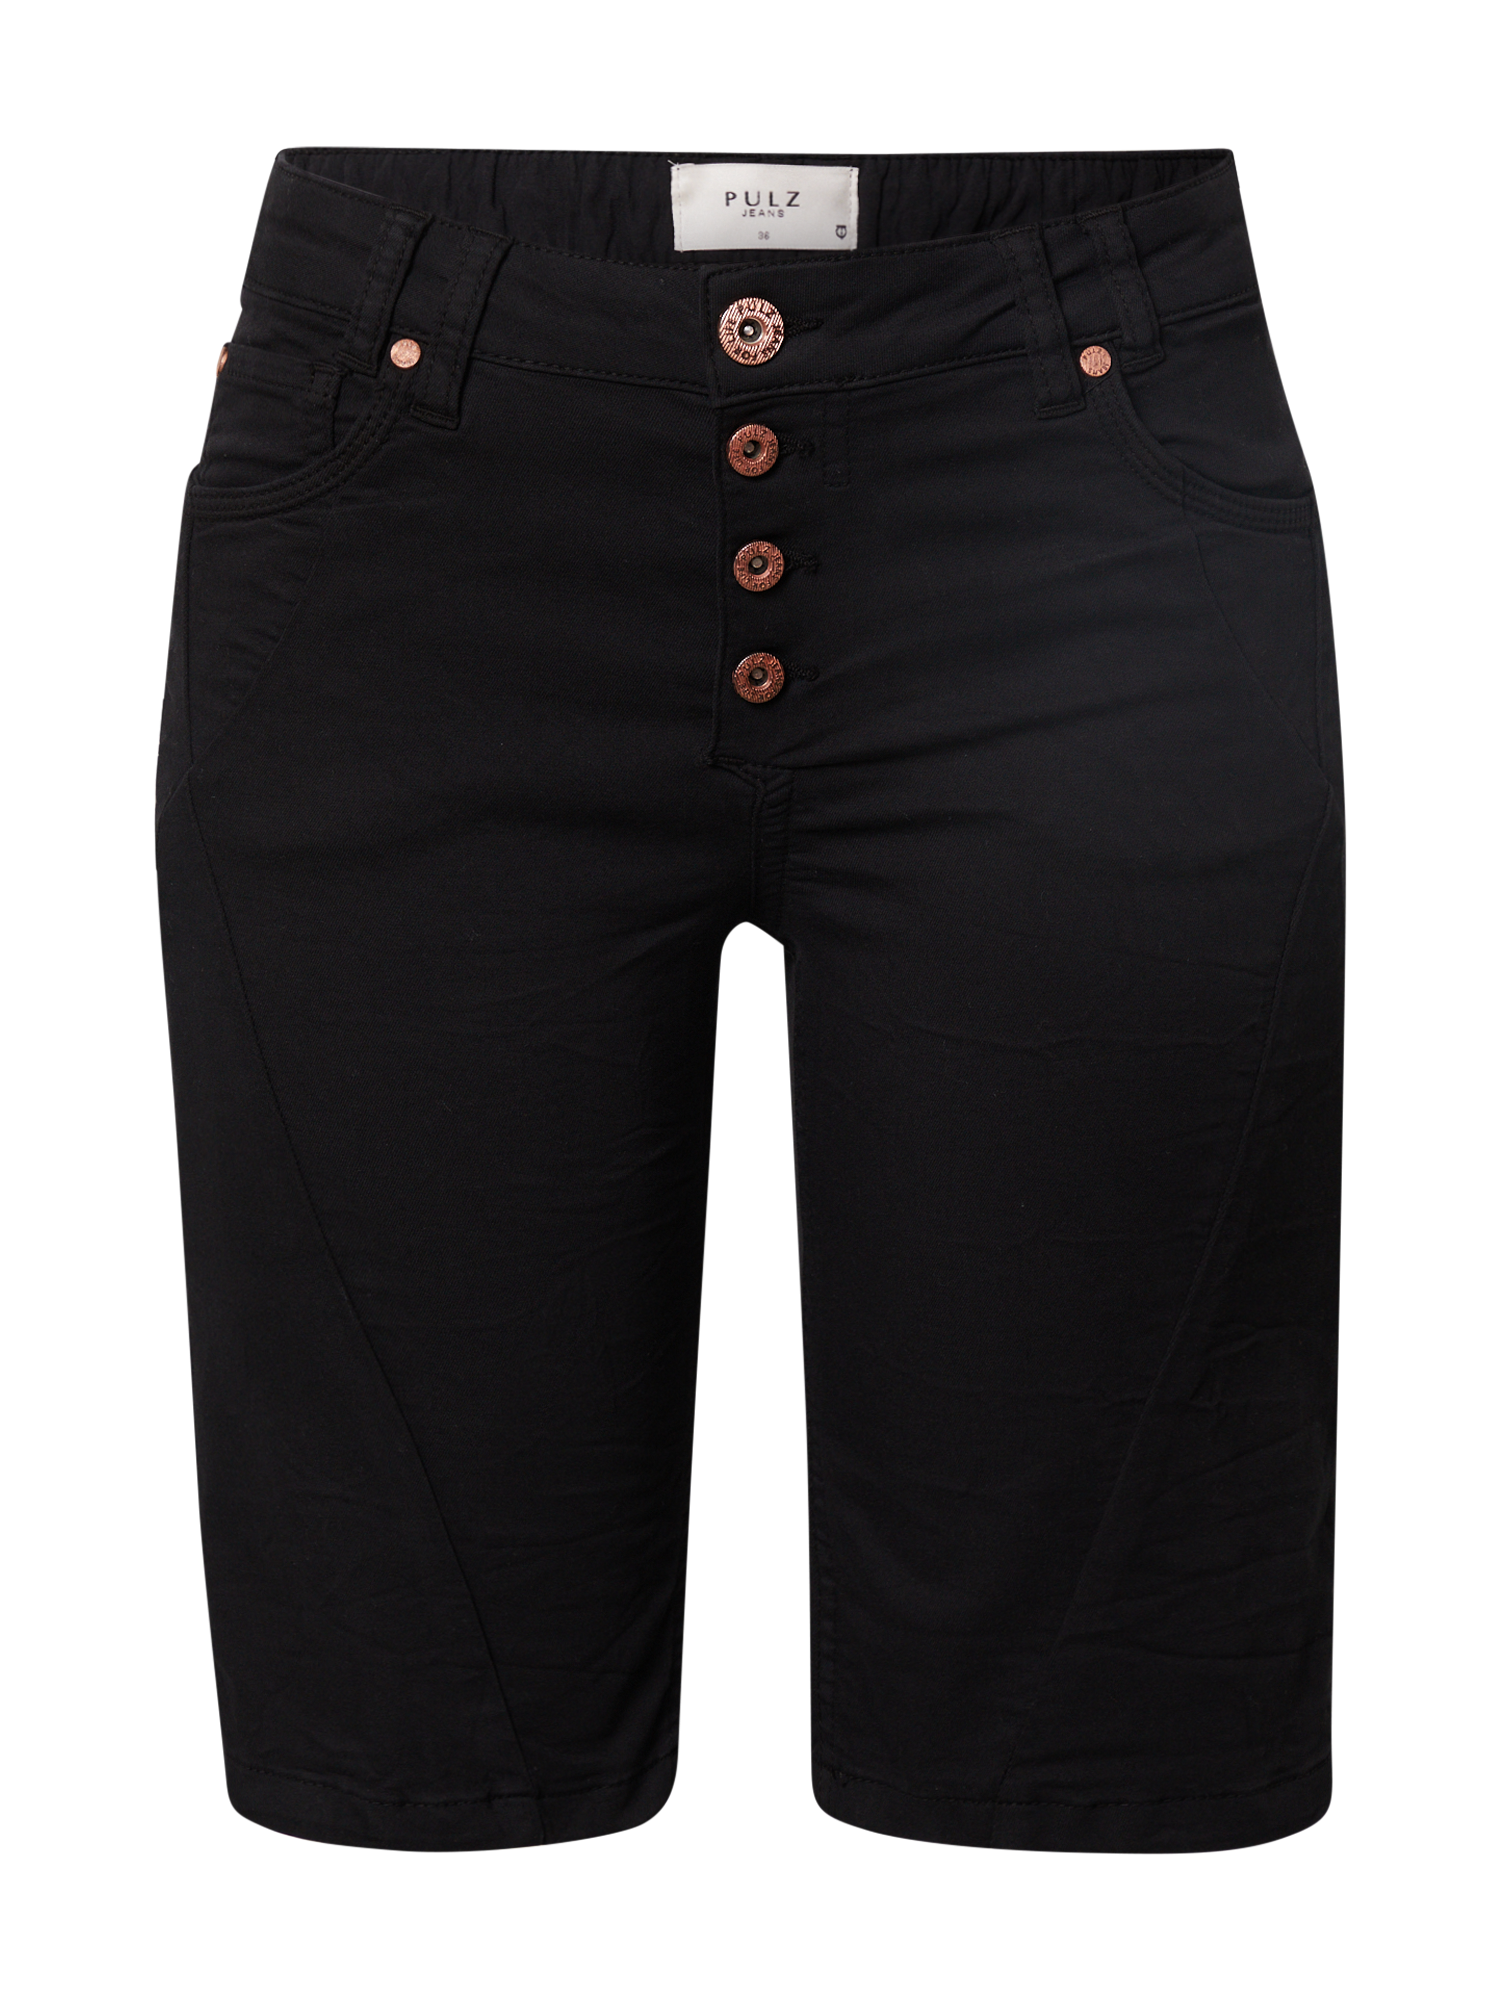 Plus size Odzież PULZ Jeans Spodnie ROSITA w kolorze Czarnym 